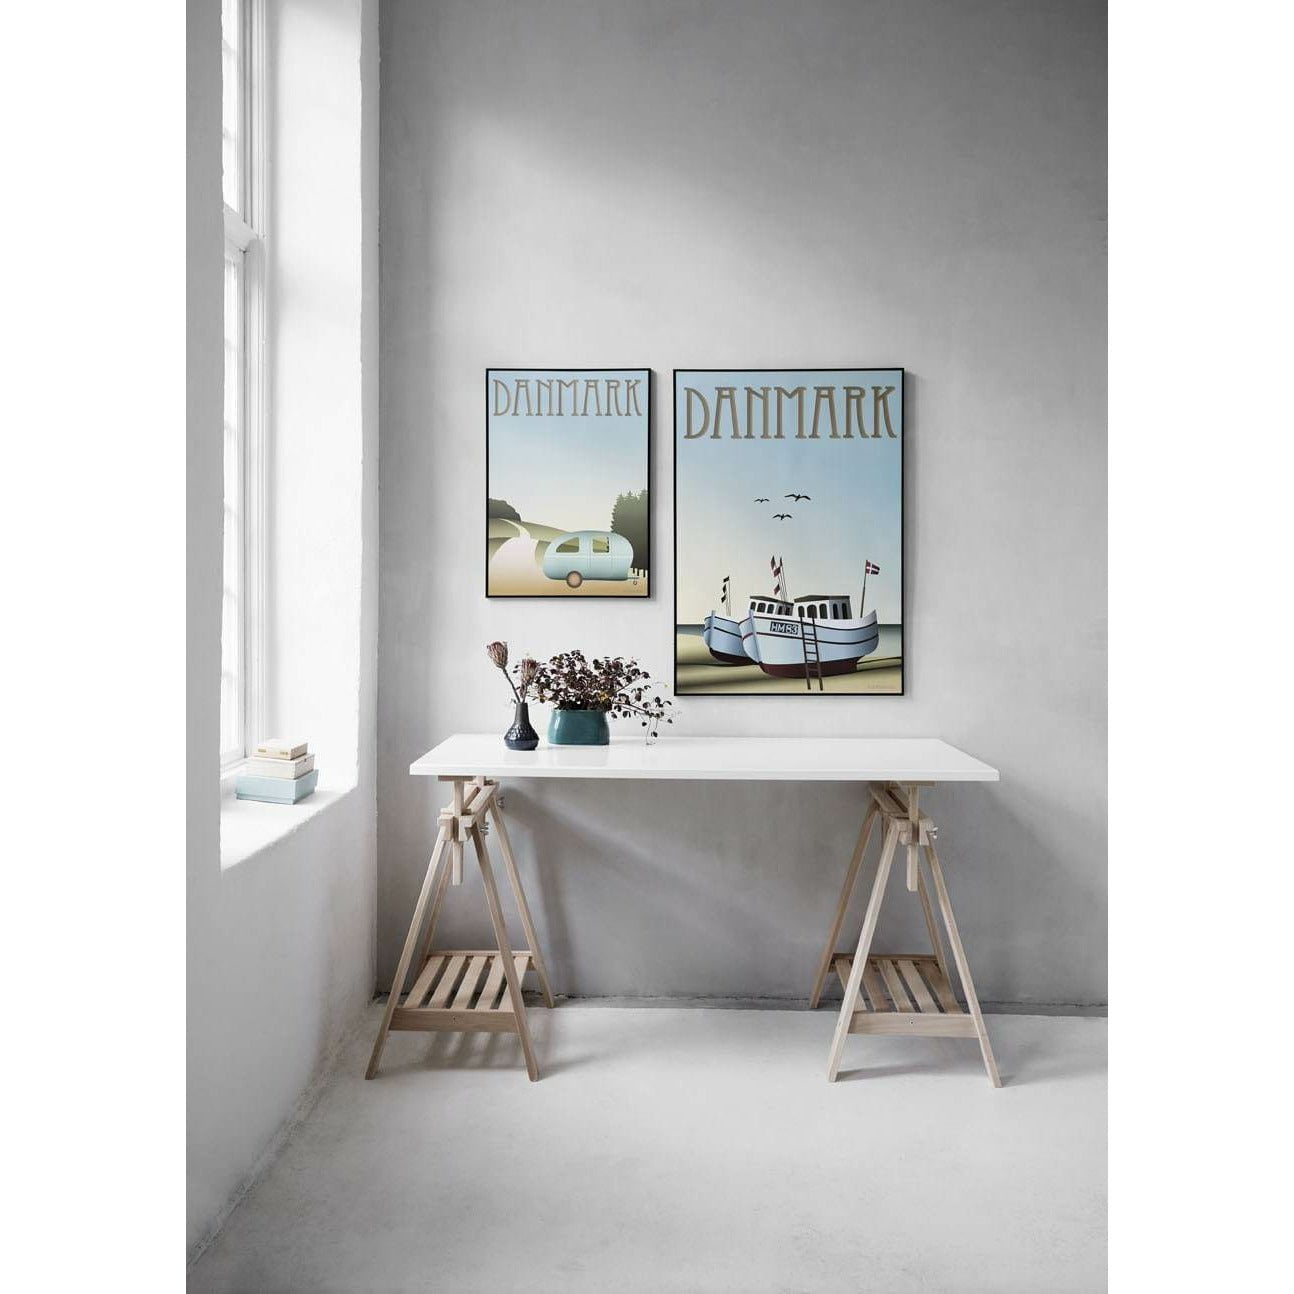 Vissevasse Tanskan kalastusveneiden juliste, 70 x100 cm